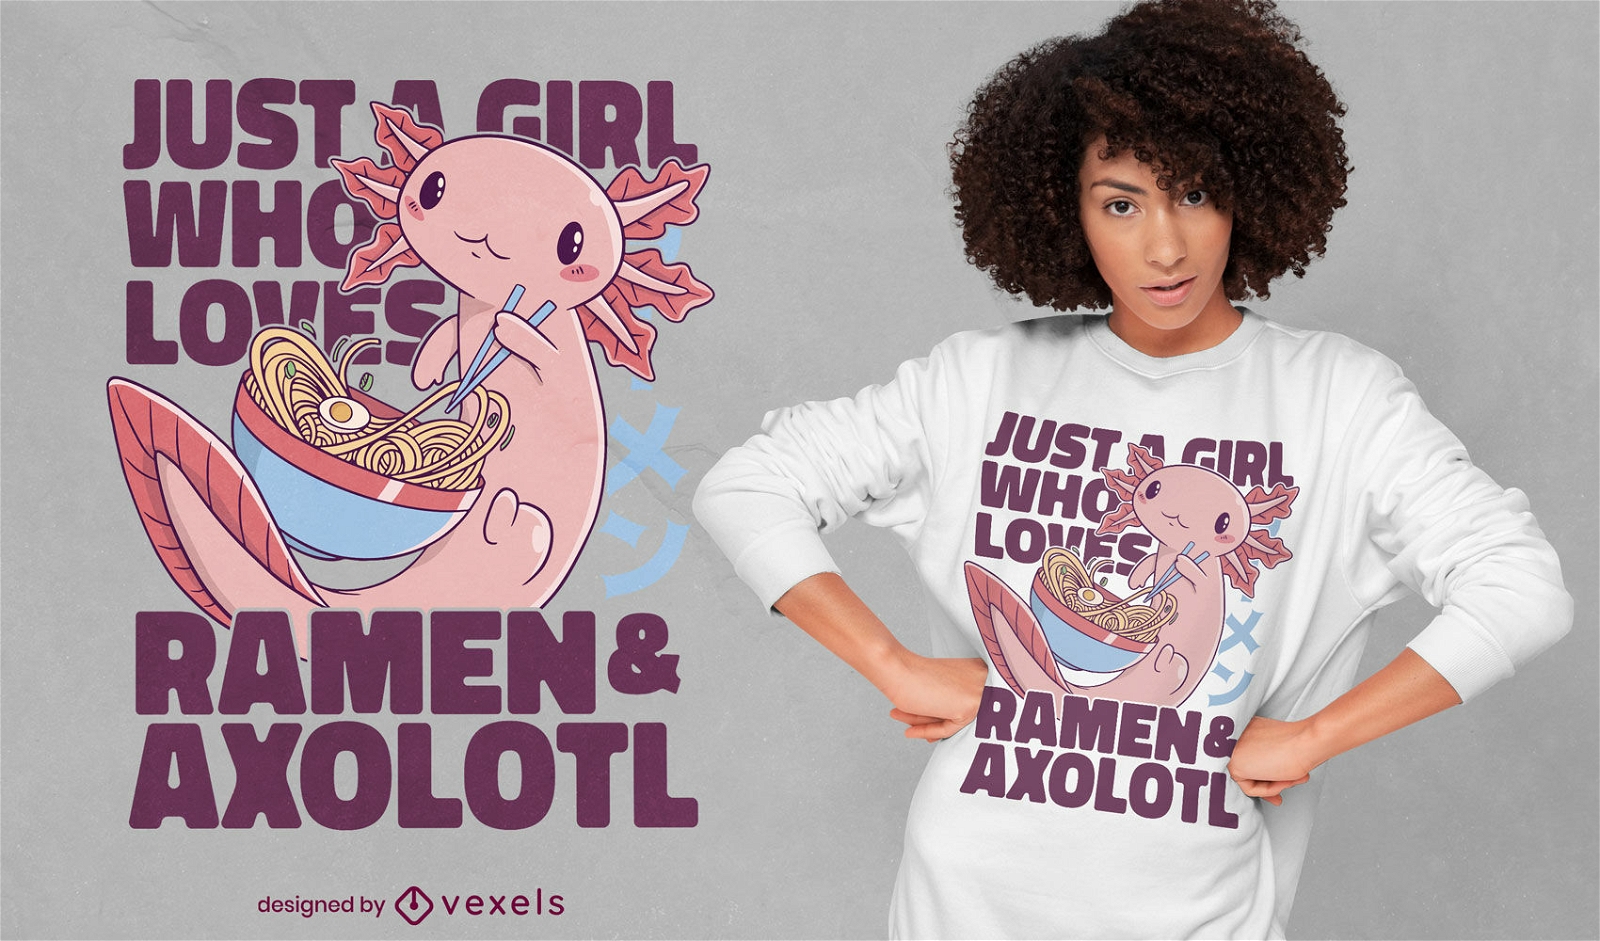 M?dchen, das Axolotl- und Ramen-T-Shirt-Design liebt